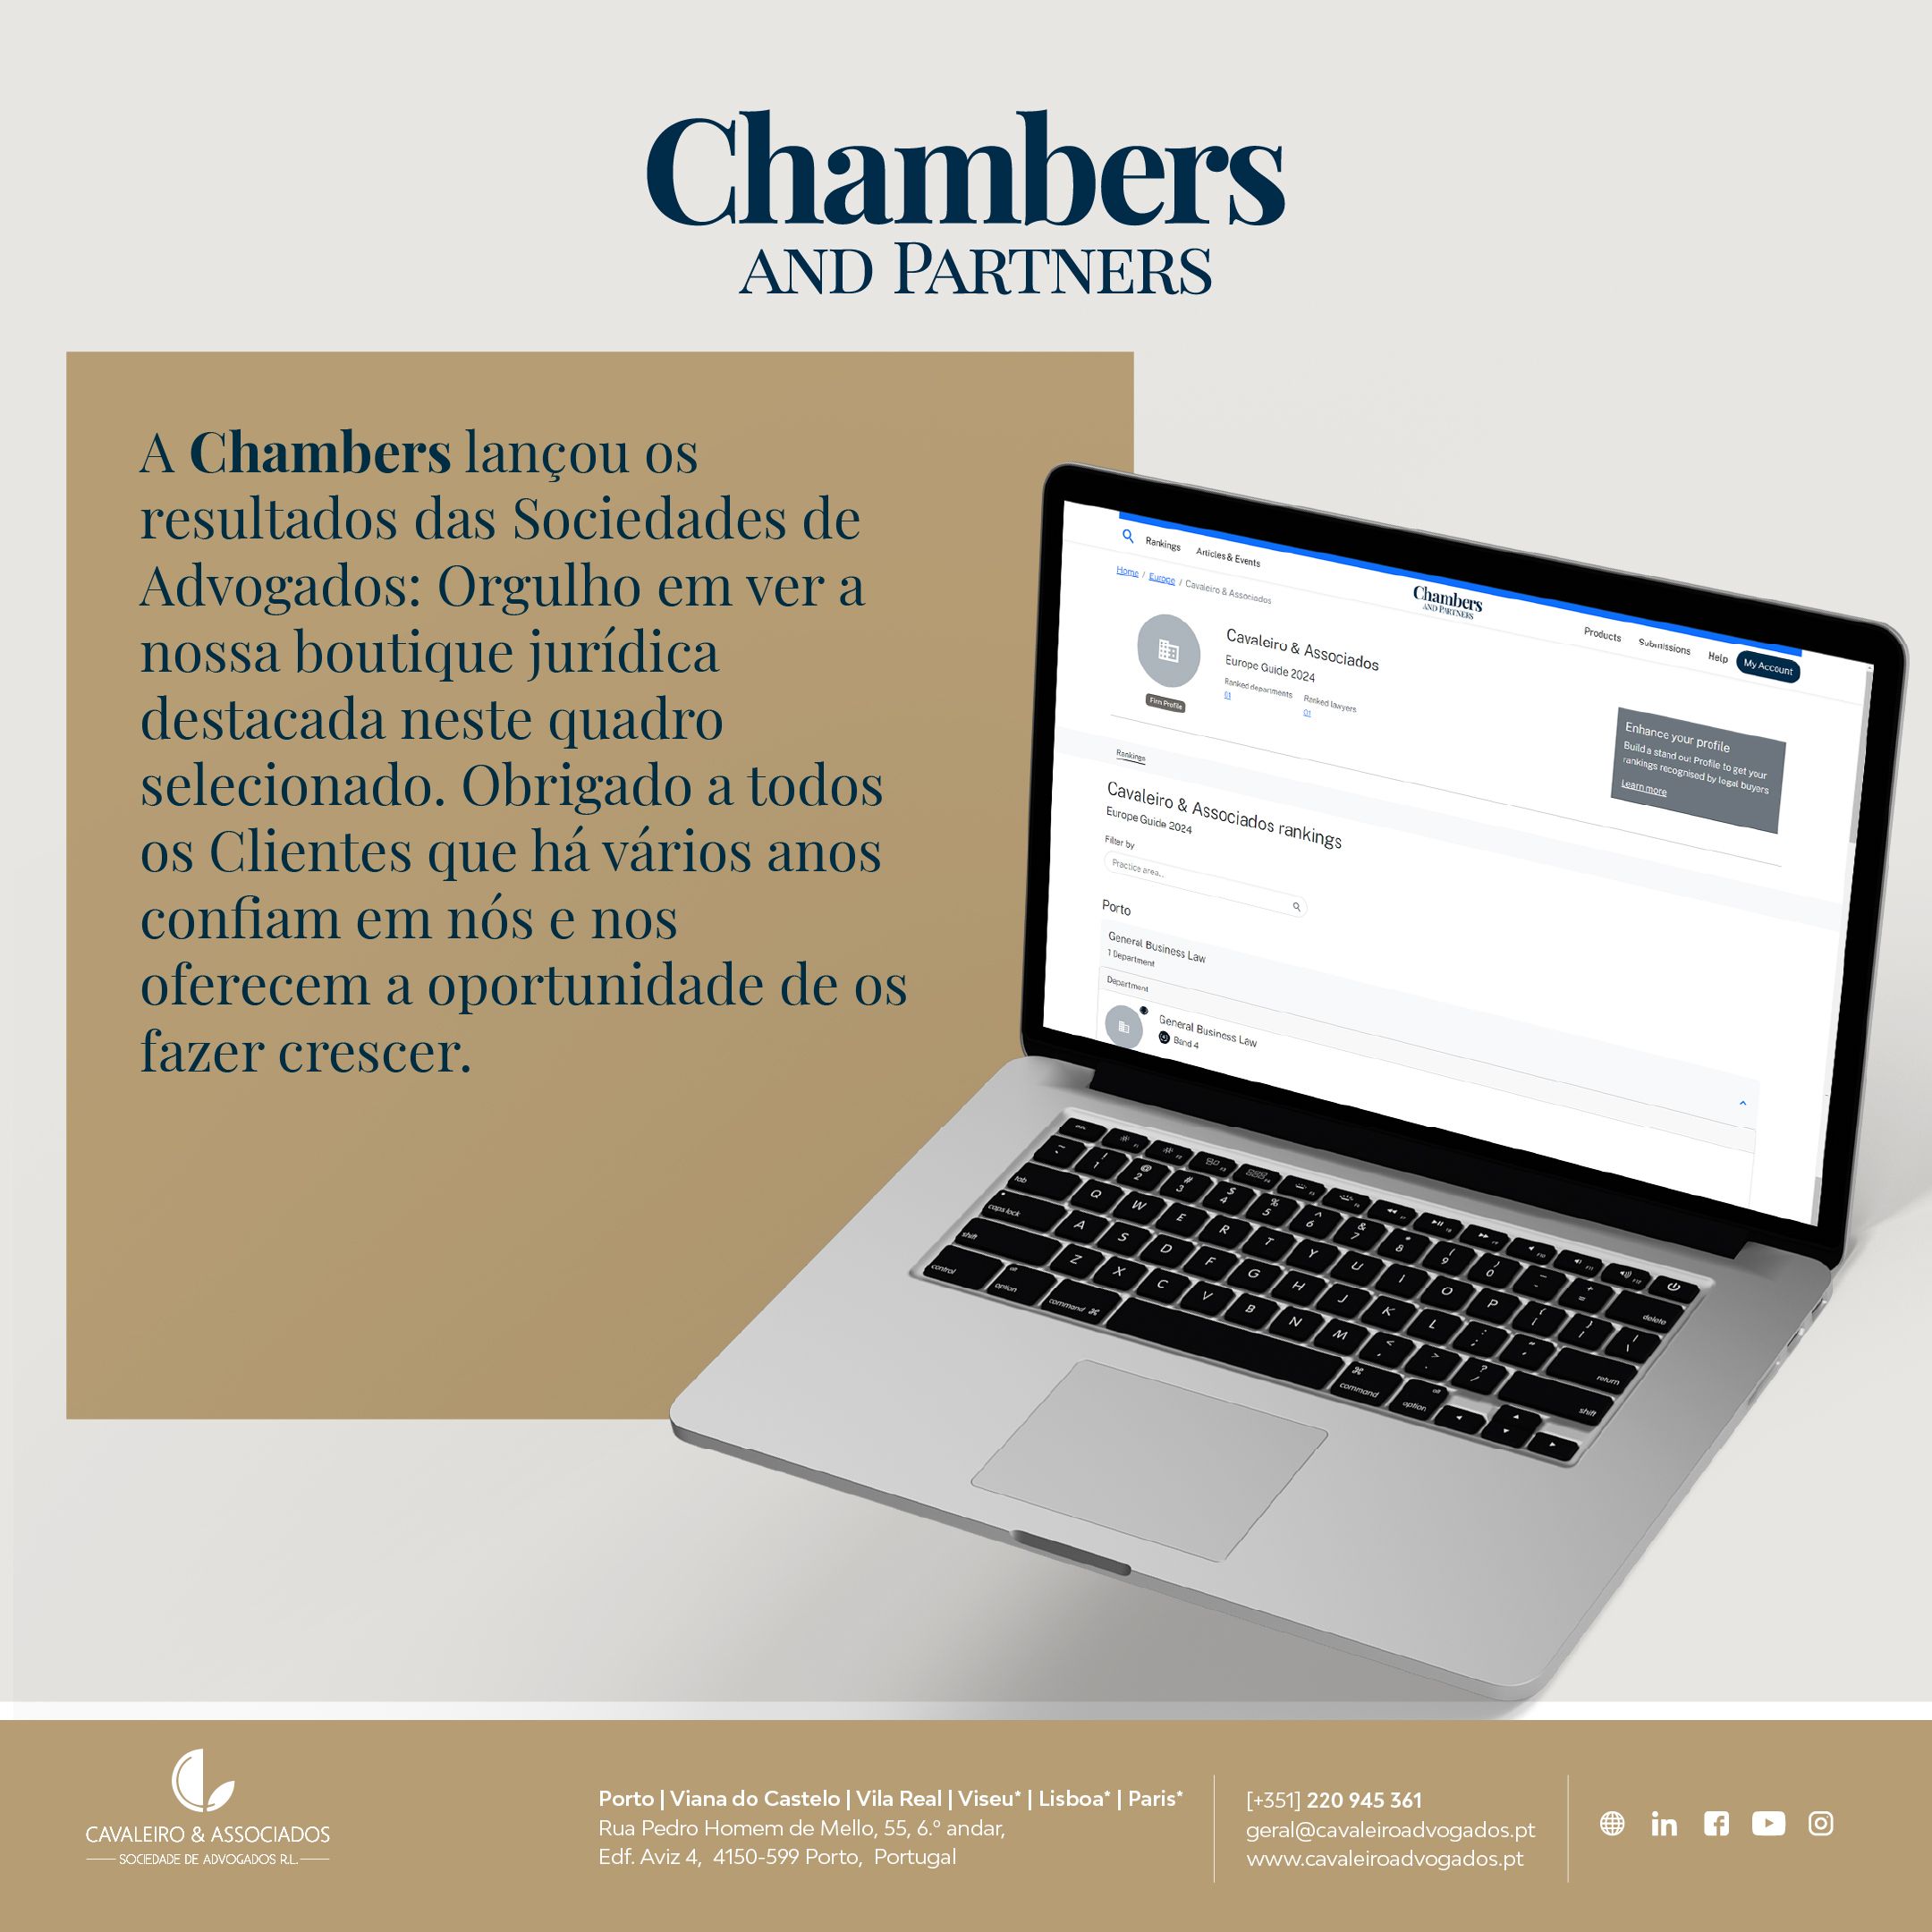 Cavaleiro & Associados no ranking da Chambers and Partners